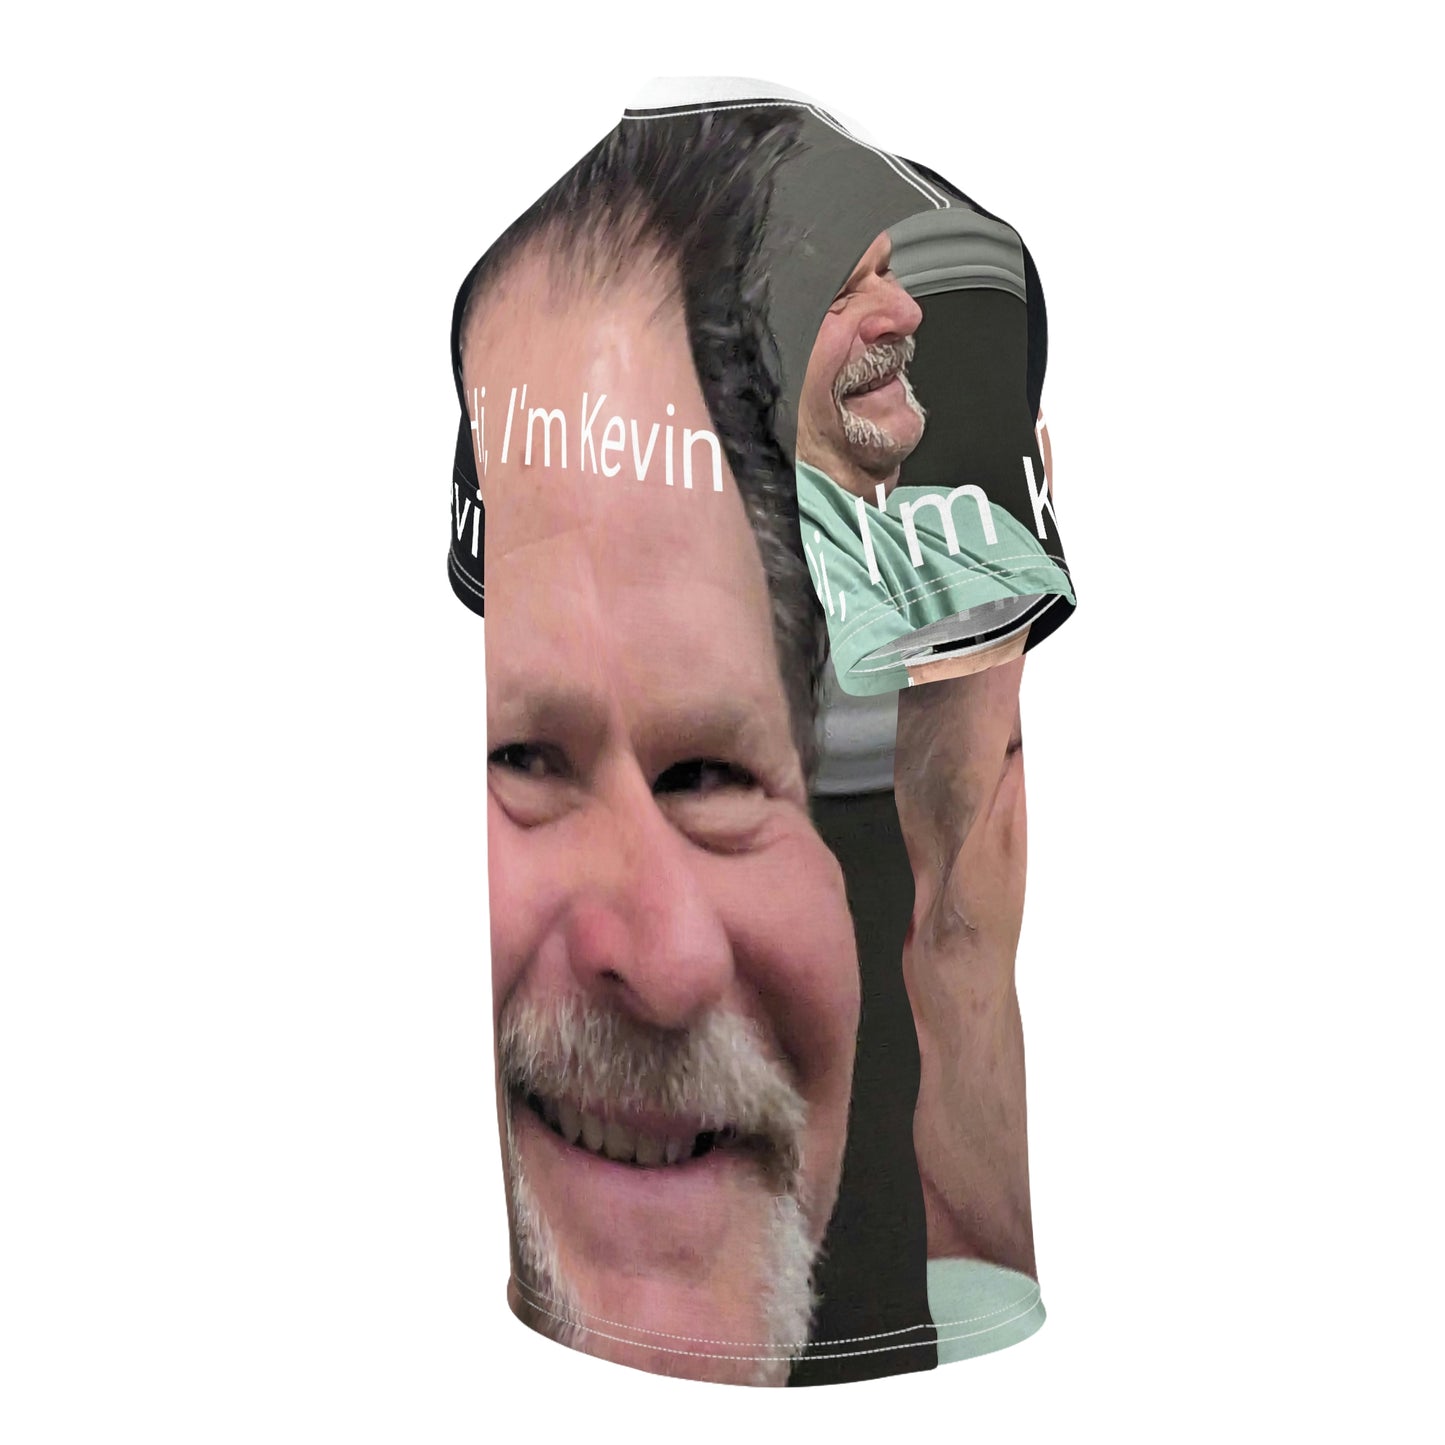 Hi I'm Kevin Unisex Tee Shirt